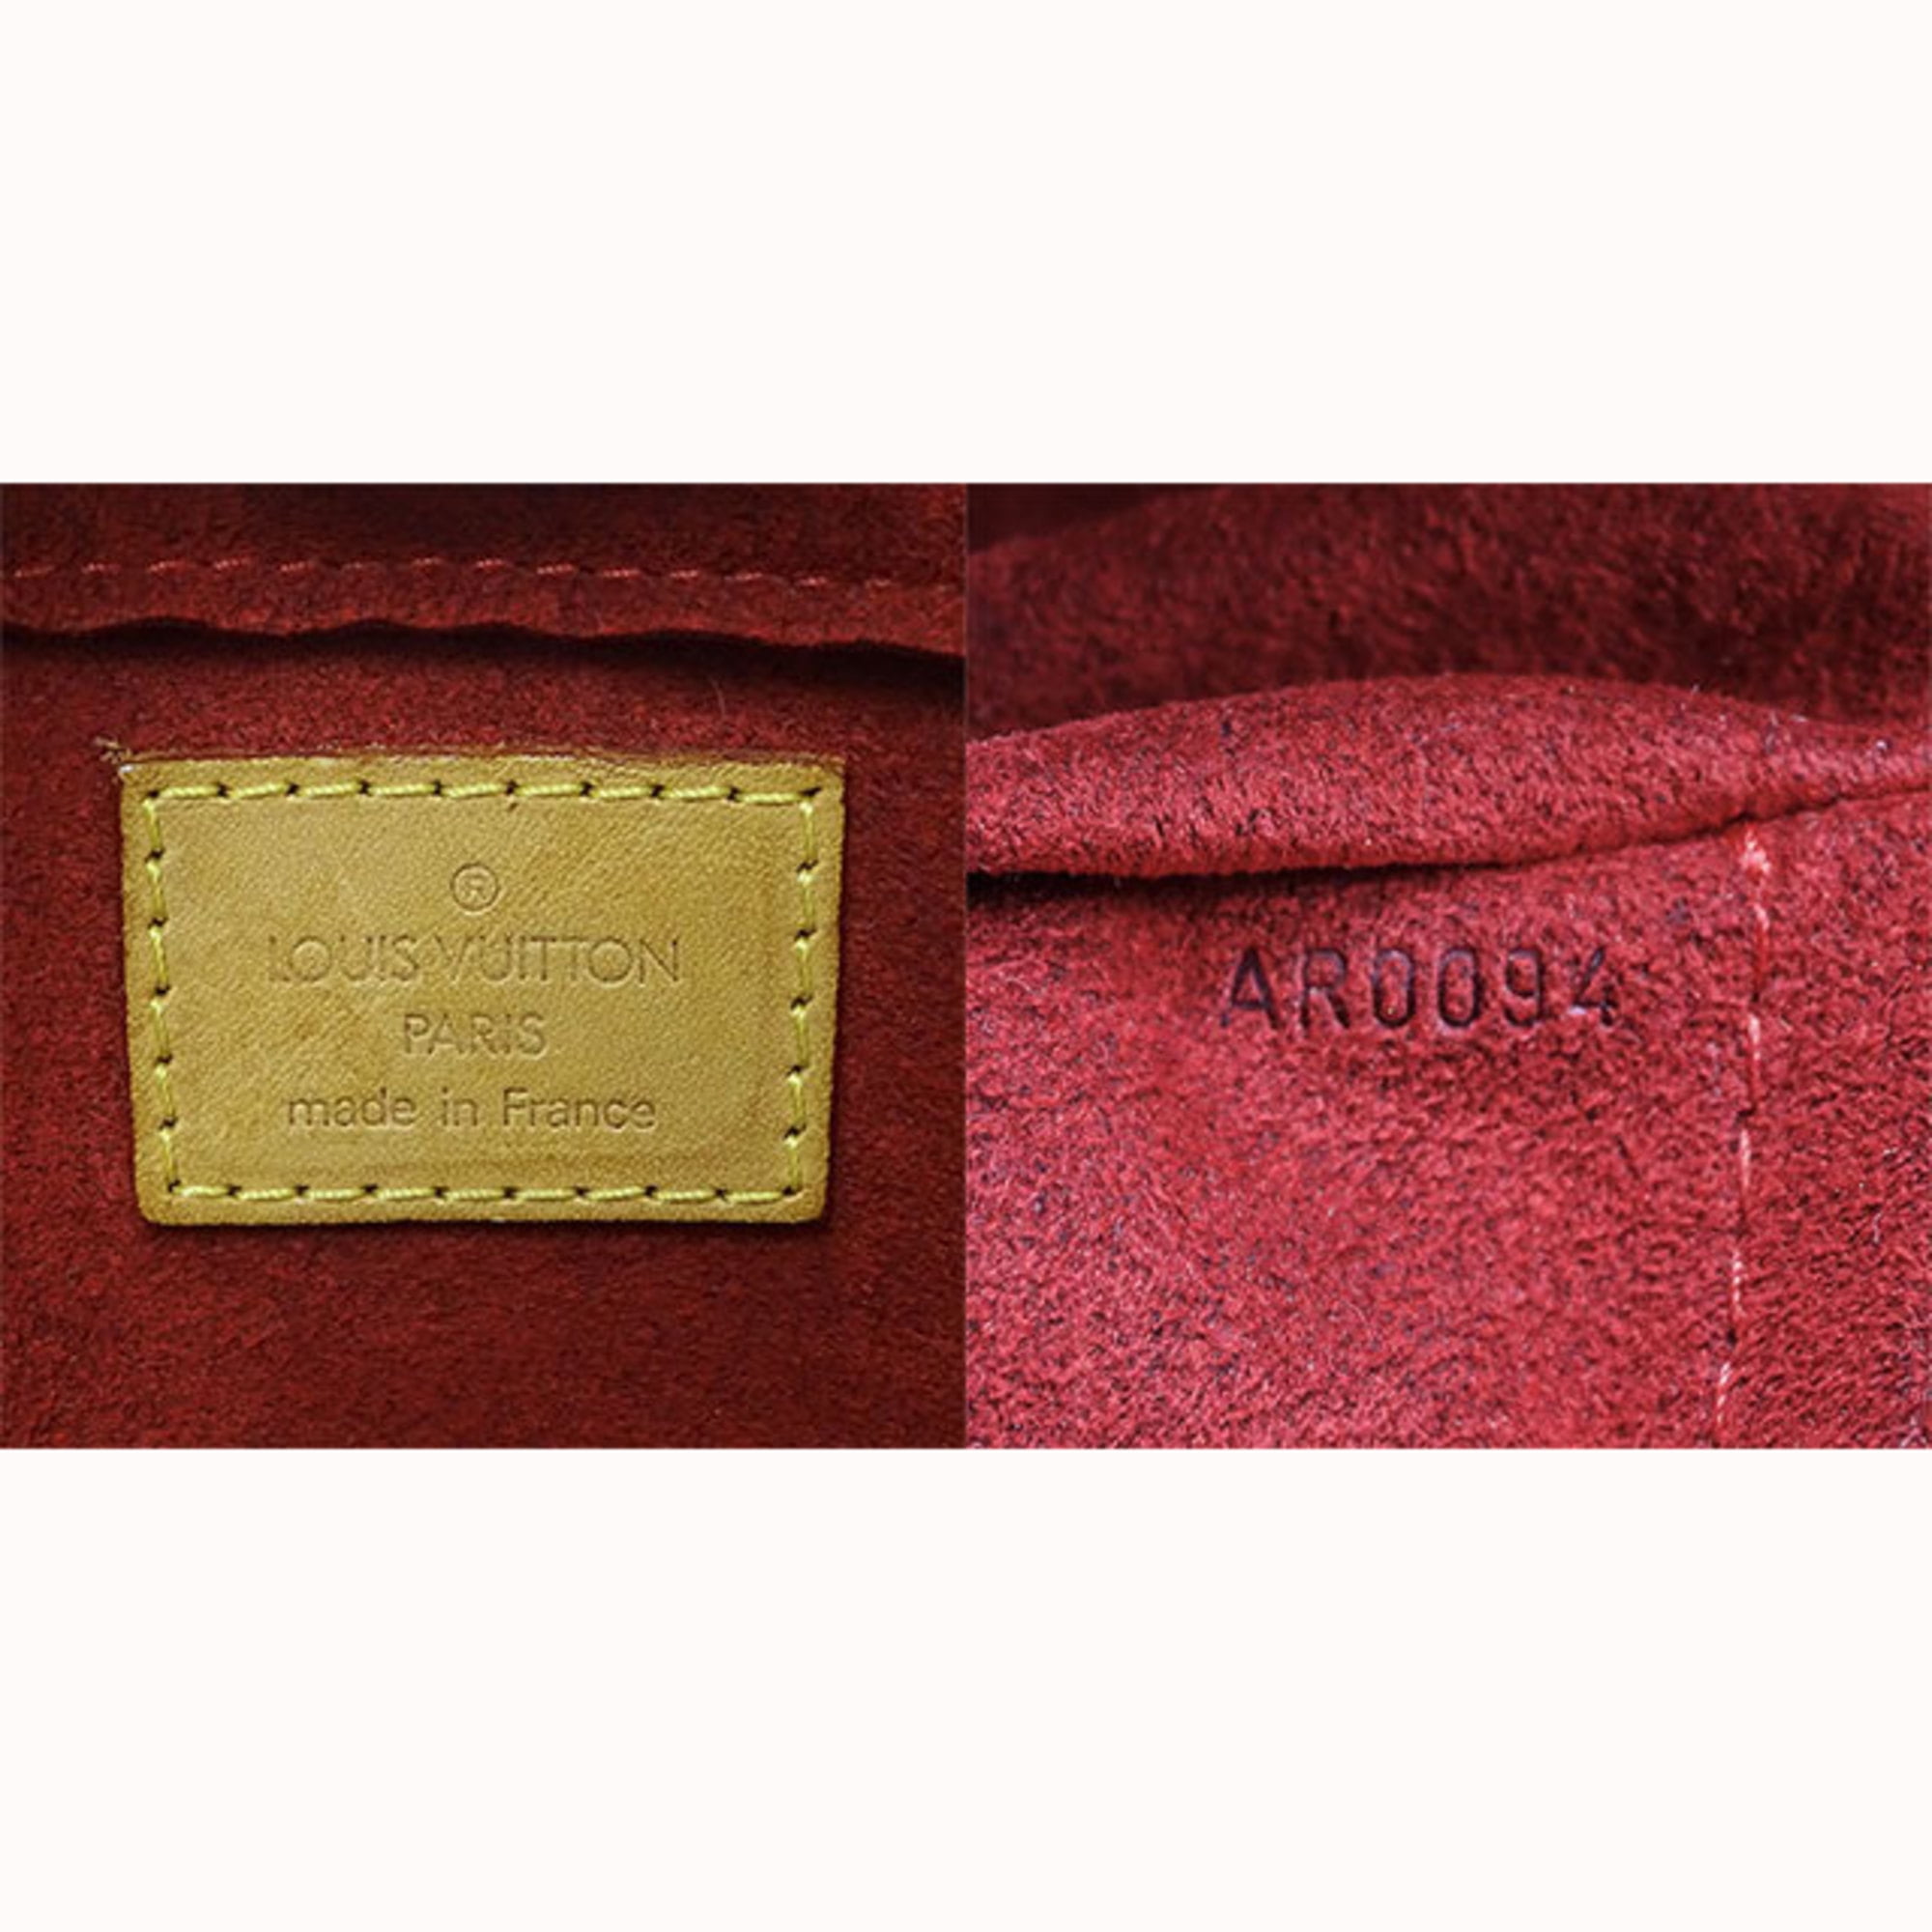 used Pre-owned Louis Vuitton Louis Vuitton Bag Monogram Women's Shoulder Vibasite GM M51163 (Fair), Adult Unisex, Size: (HxWxD): 21.5cm x 32cm x 12cm